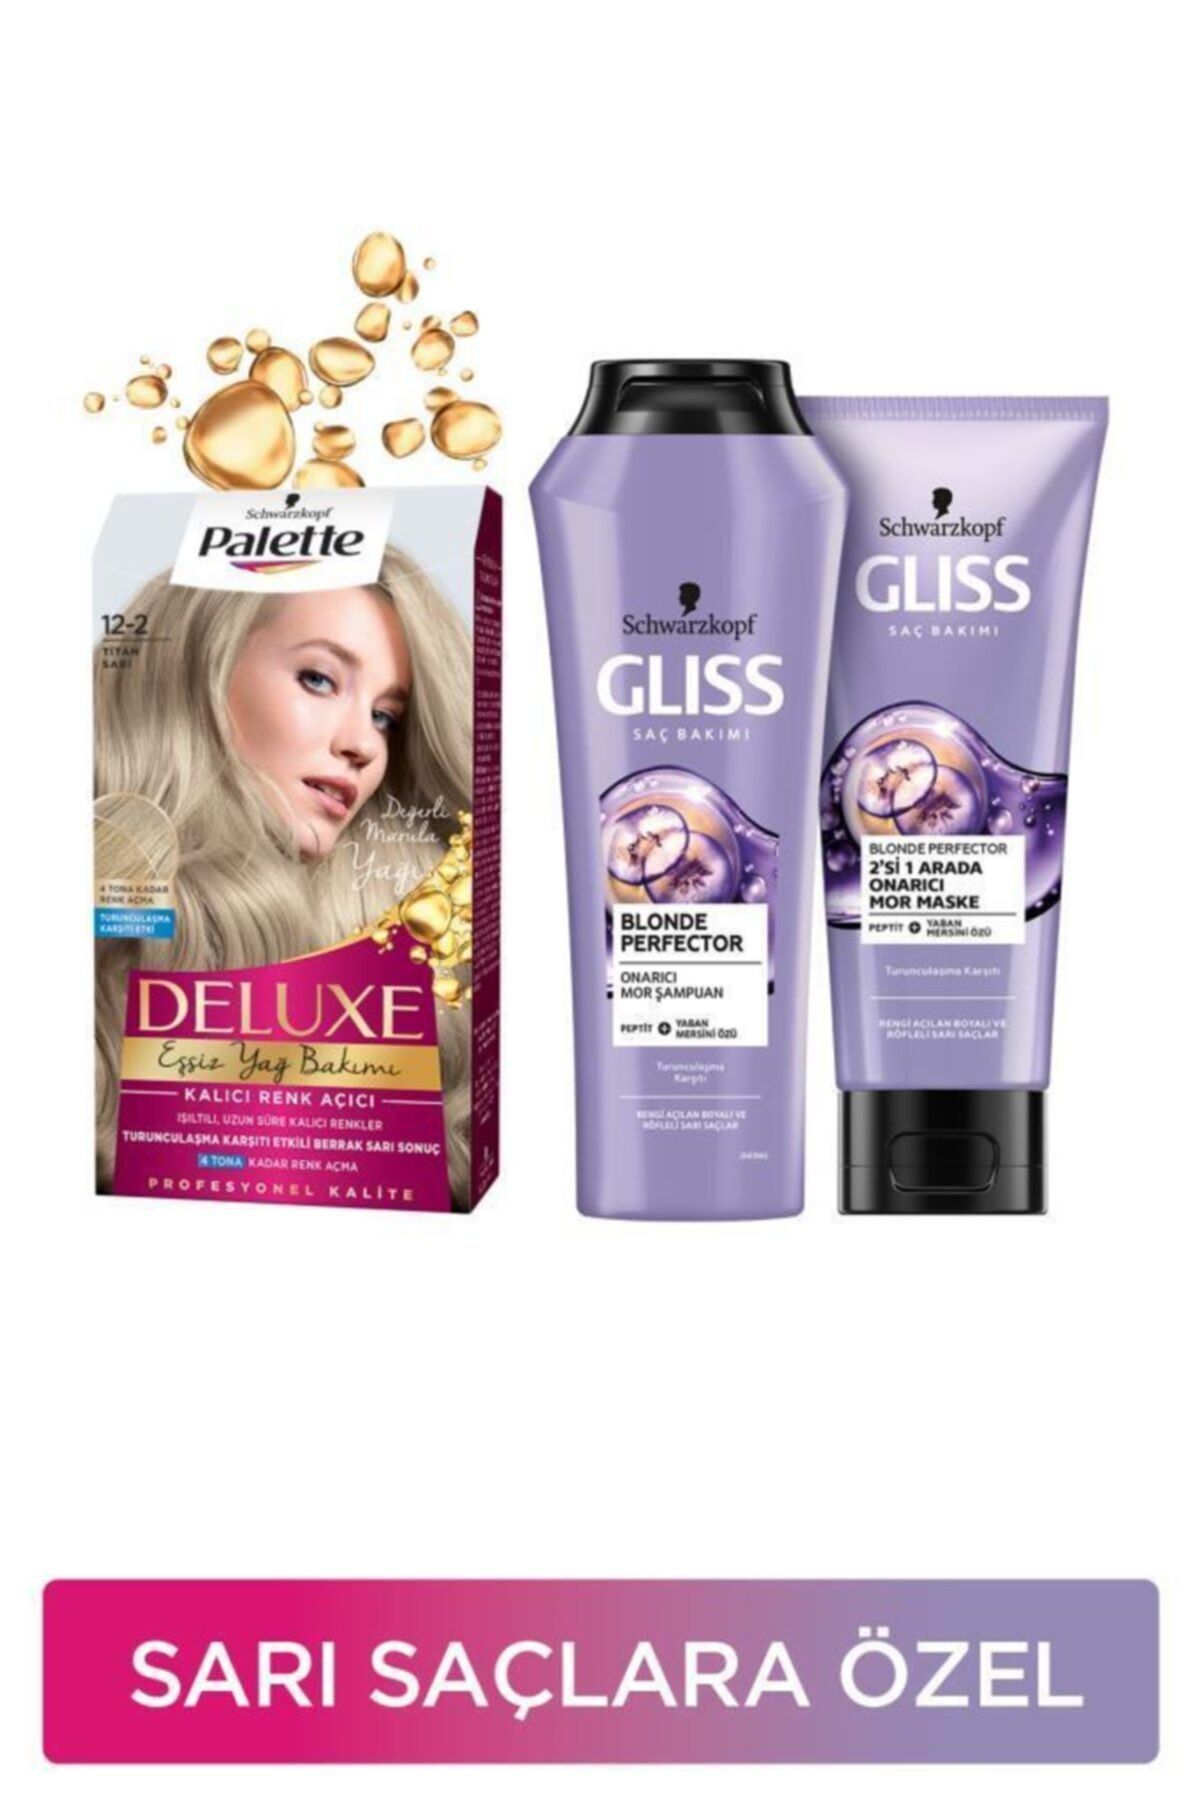 Gliss Sarı Saçlara Özel Bakım Seti Palette Deluxe Saç Boyası 12-2 Titan Sarı + Blonde Perfector Mor